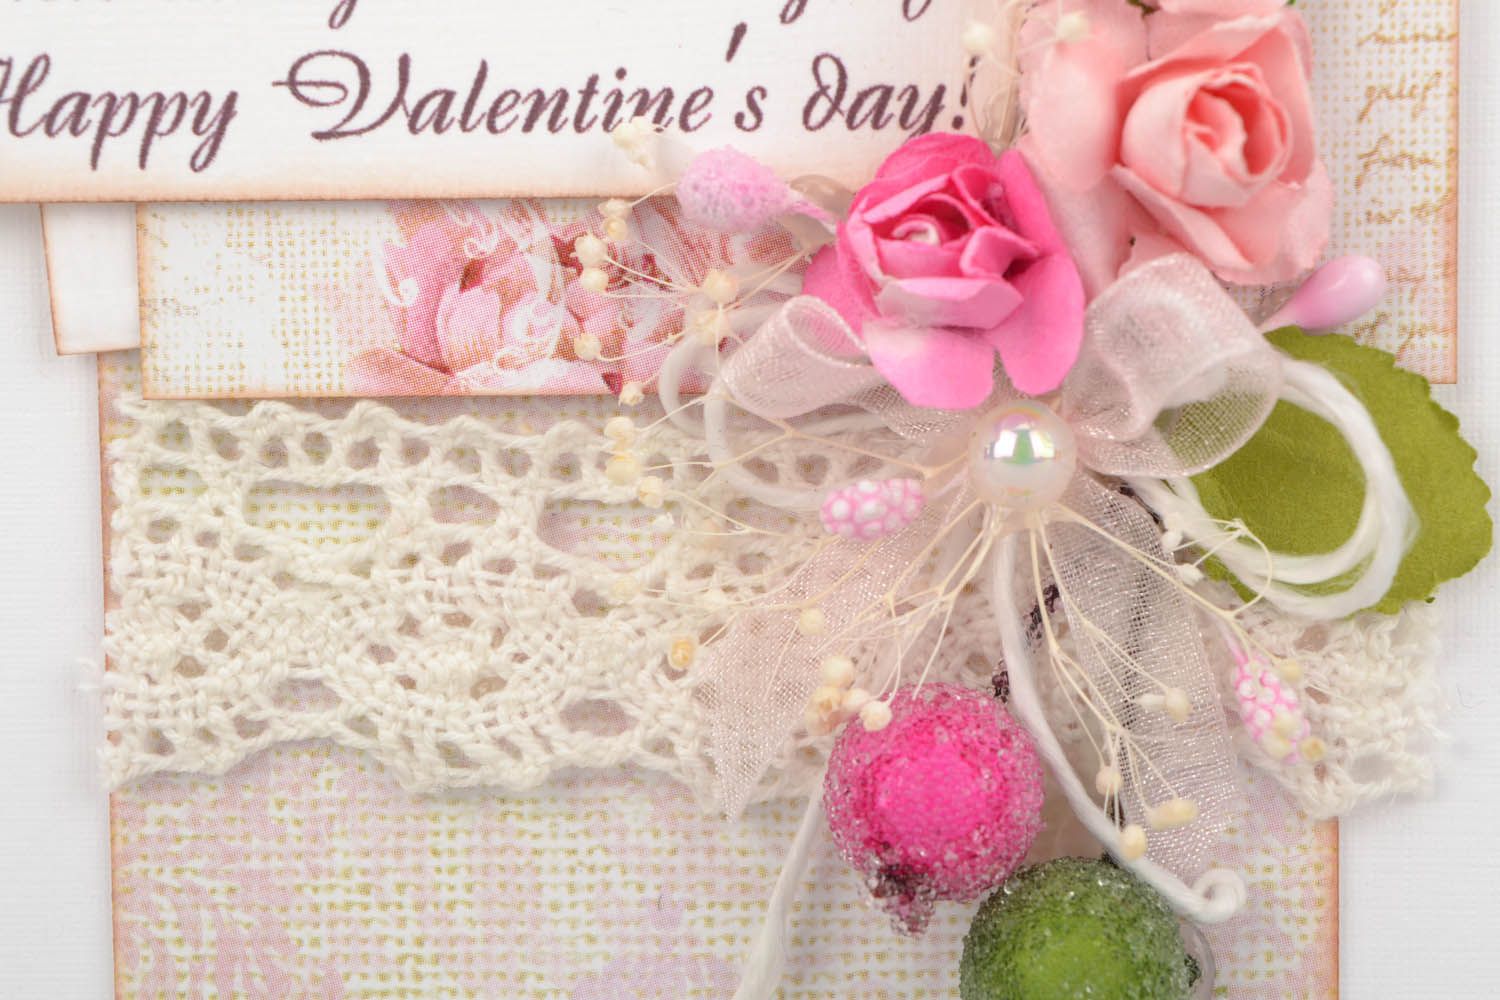 Cartão exclusivo de parabéns feito à mão  Feliz Dia dos Namorados foto 3